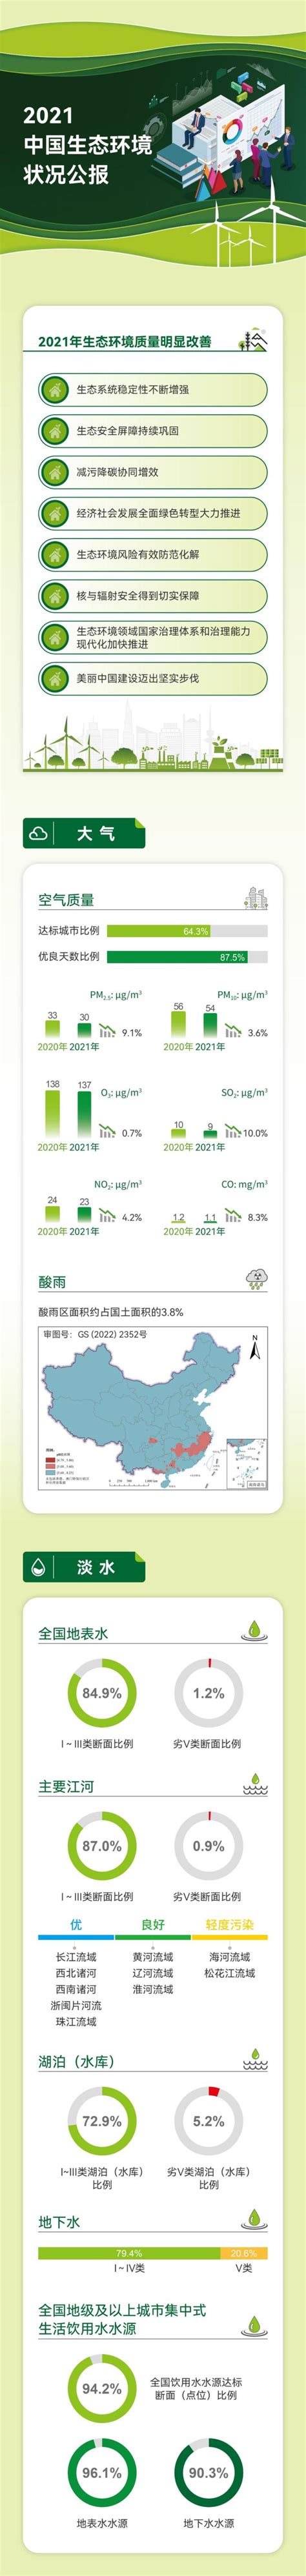 2019-2023年中国一般工业固体废物预测 - 中投顾问|中国投资咨询网